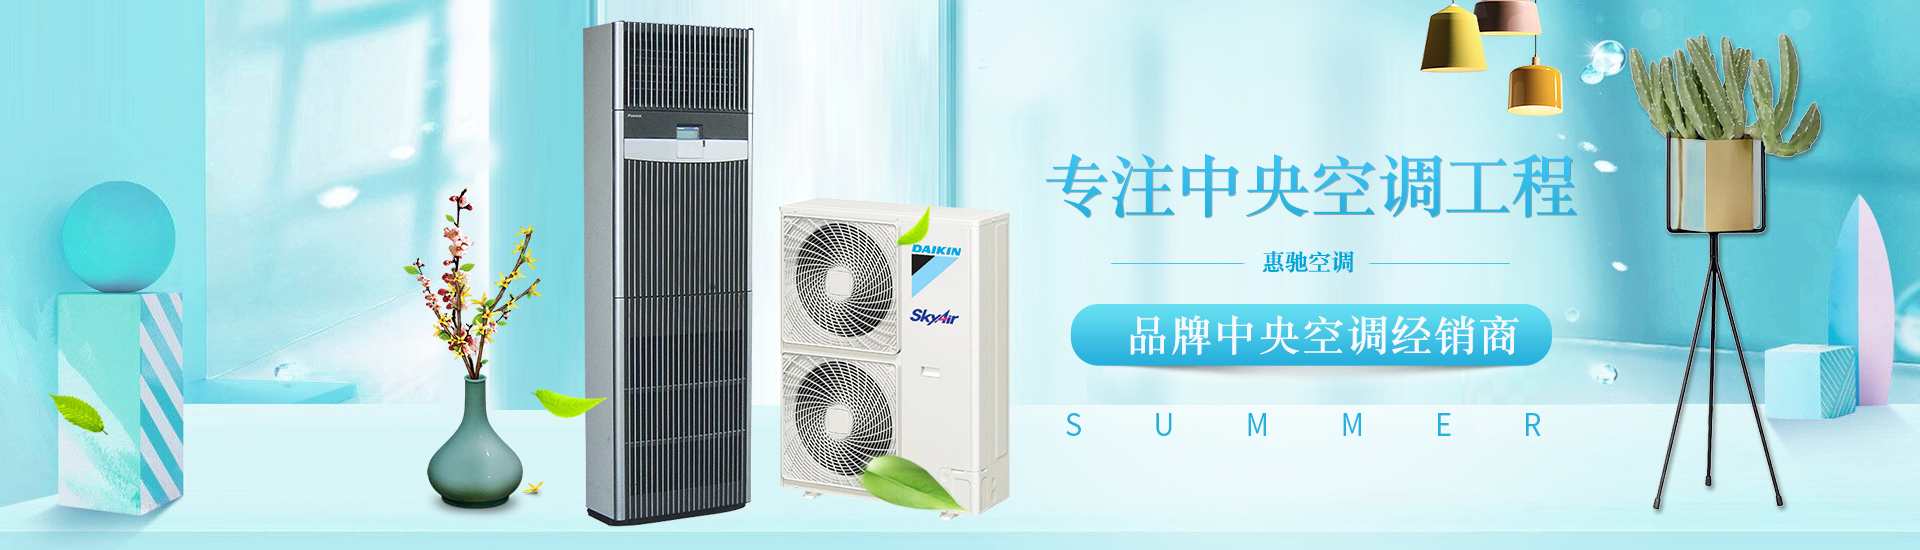 上海惠驰空调电器有限公司